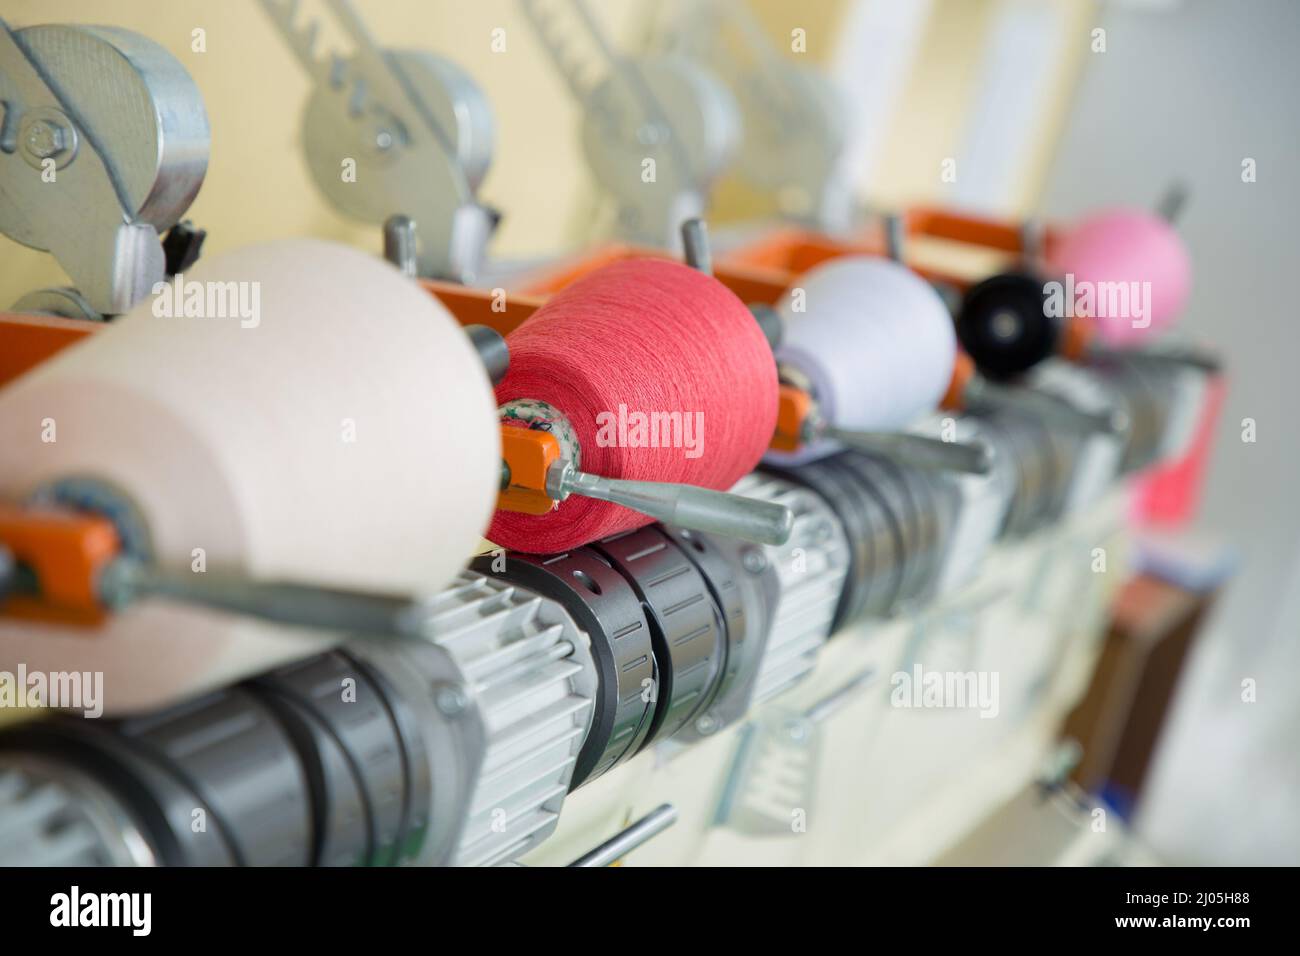 Textil-Industrie mit Strickmaschinen in Fabrik Stockfoto